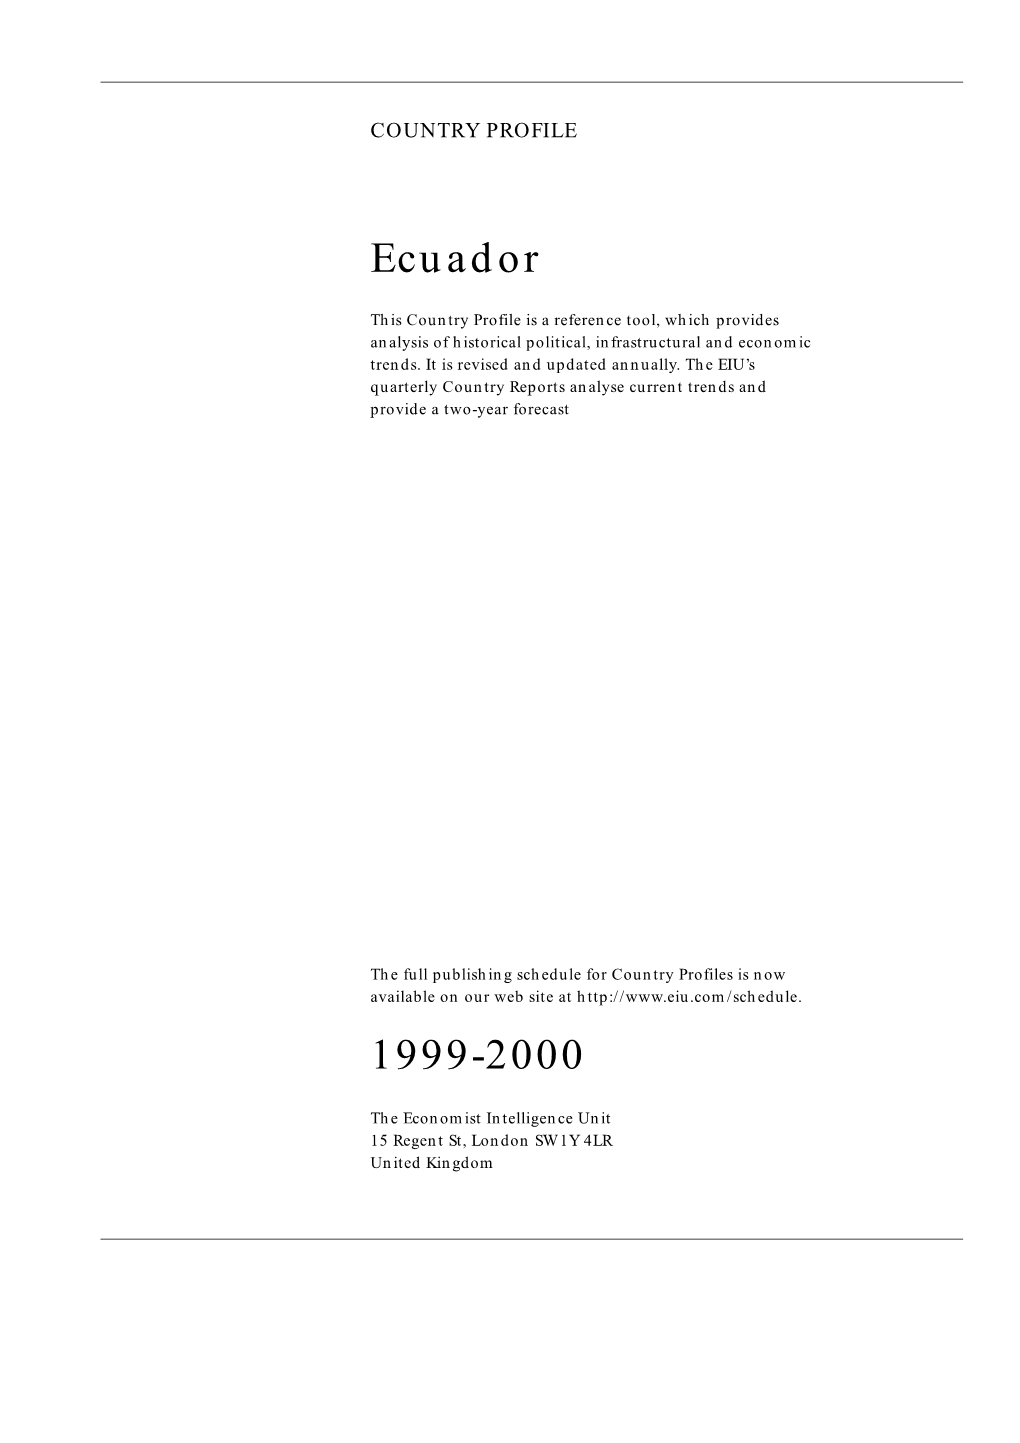 Ecuador 1999-2000